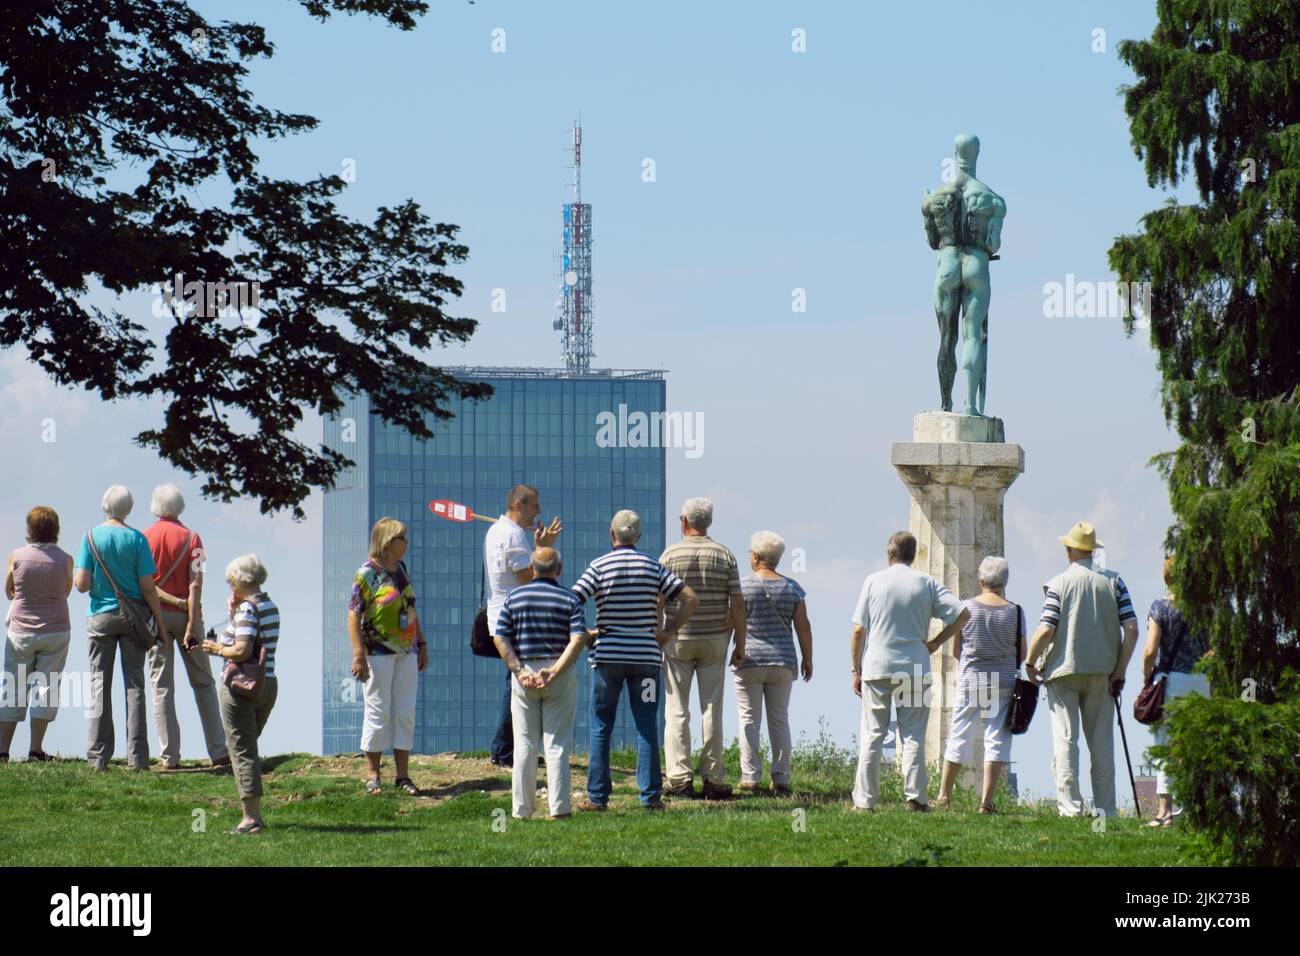 Céntrese en la Estatua de la Victoria y el rascacielos alto de Belgrado, la capital de Serbia, en primer plano en grupo de excursión borrosa Foto de stock